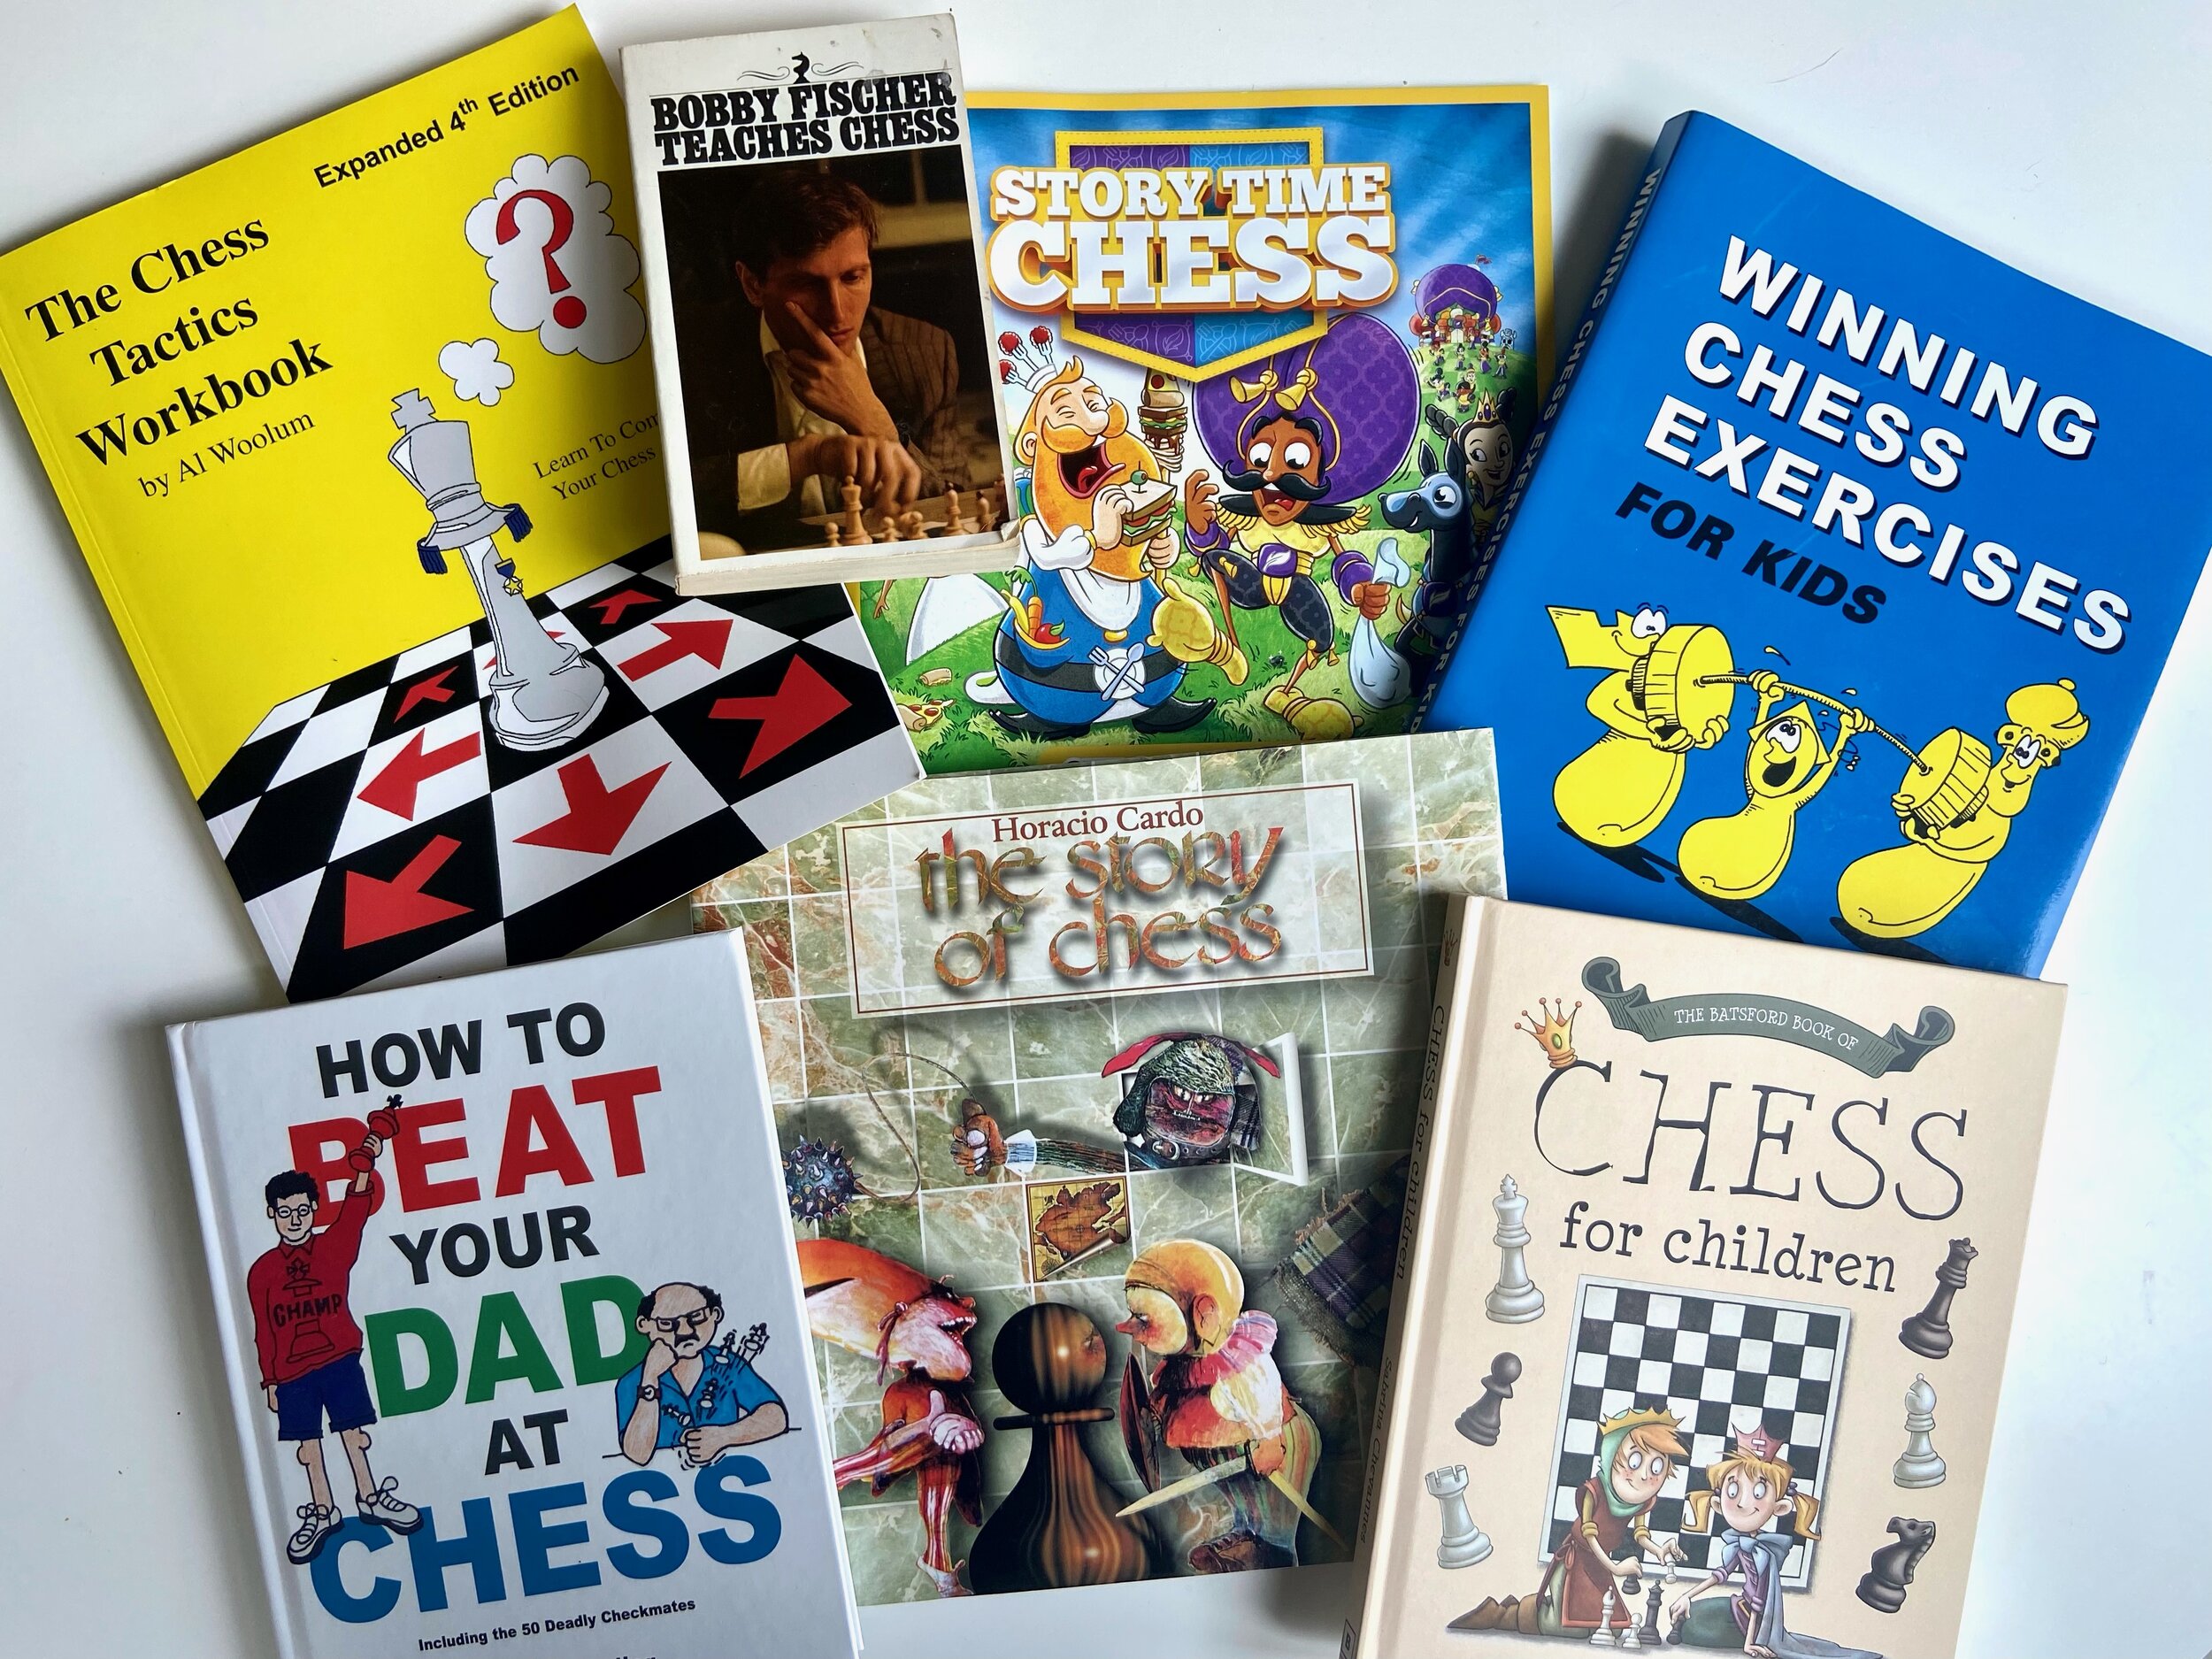 best chess tactics book